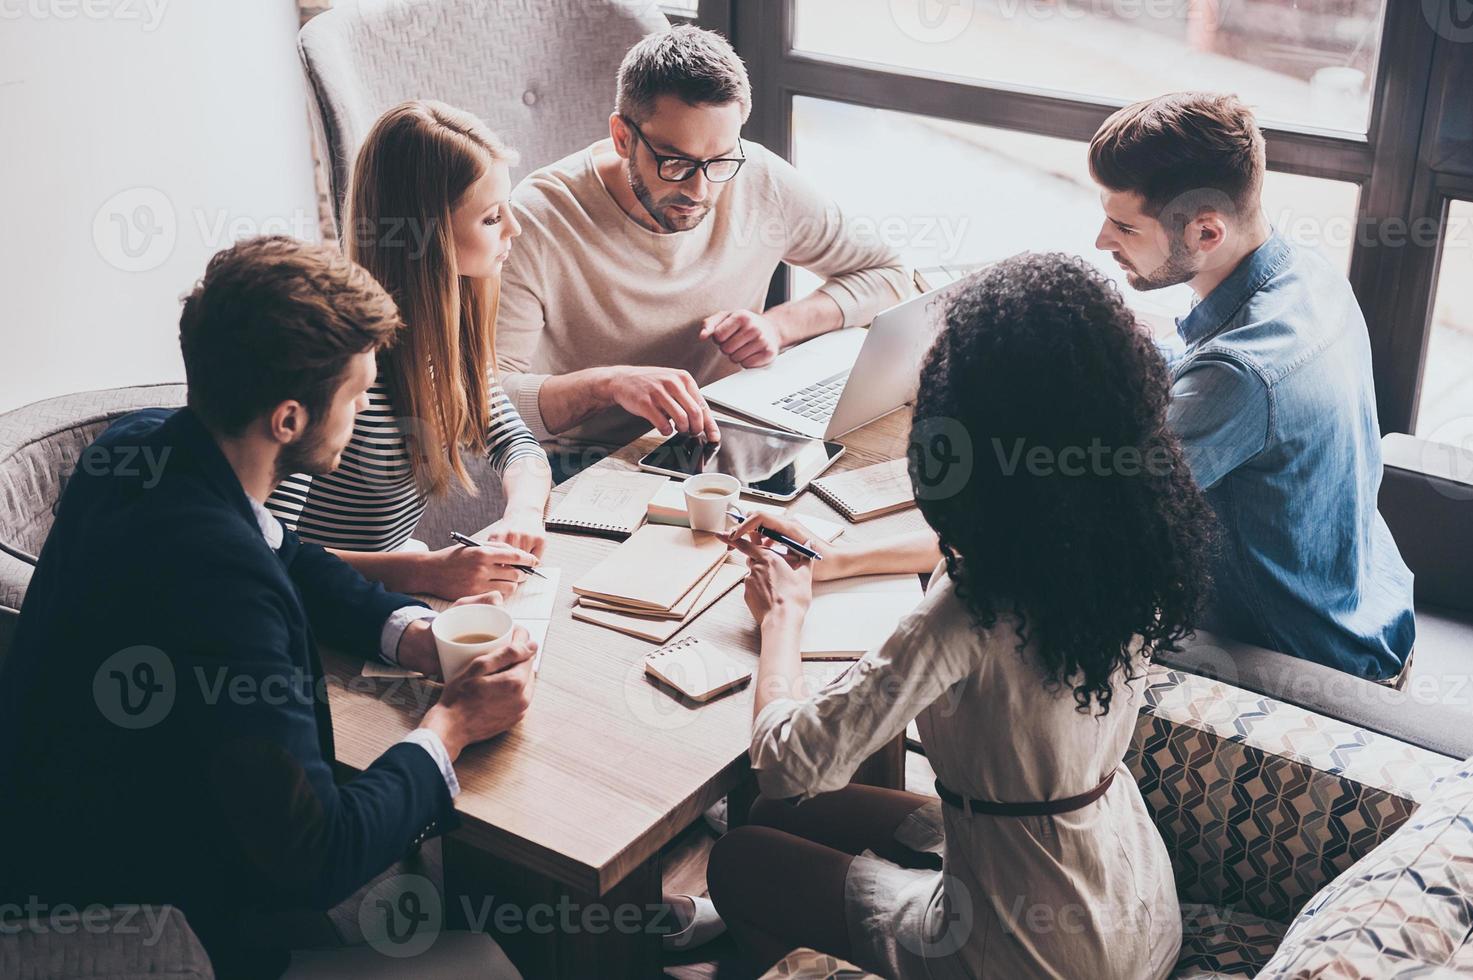 preste atención a este joven apuesto que señala una tableta digital mientras se sienta en la mesa de la oficina en una reunión de negocios con sus compañeros de trabajo foto